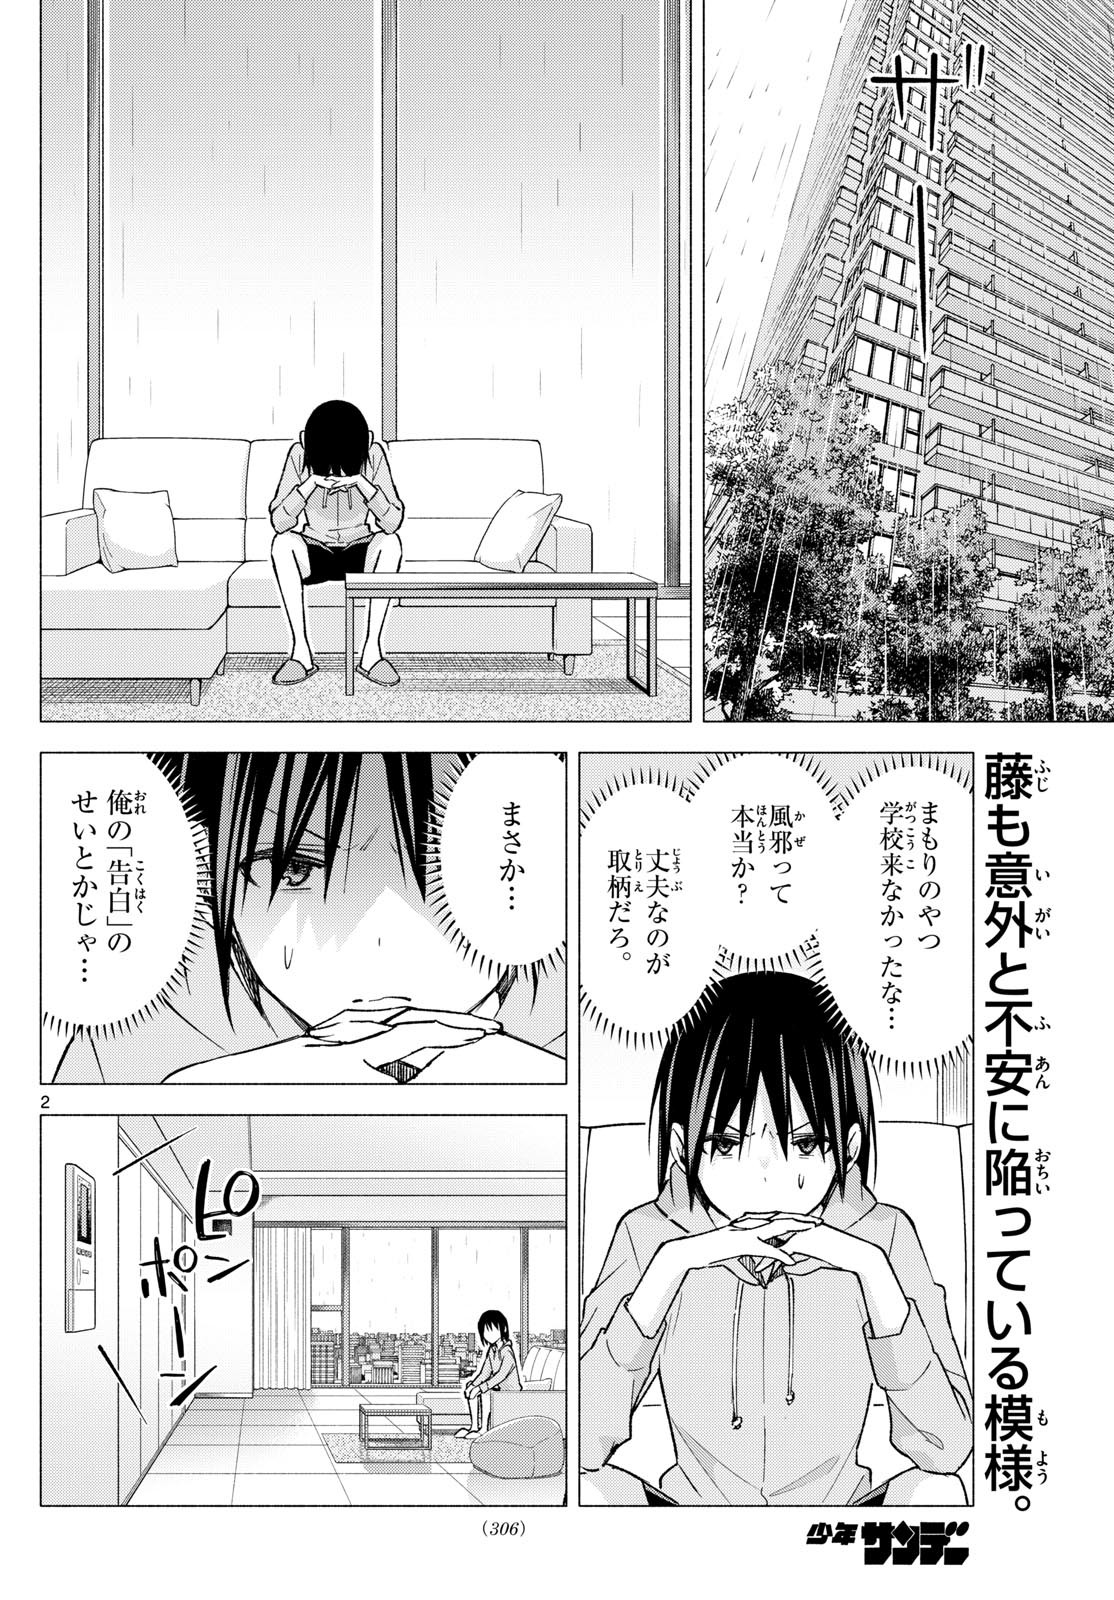 Kimi to Warui Koto ga Shitai - Chapter 059 - Page 2